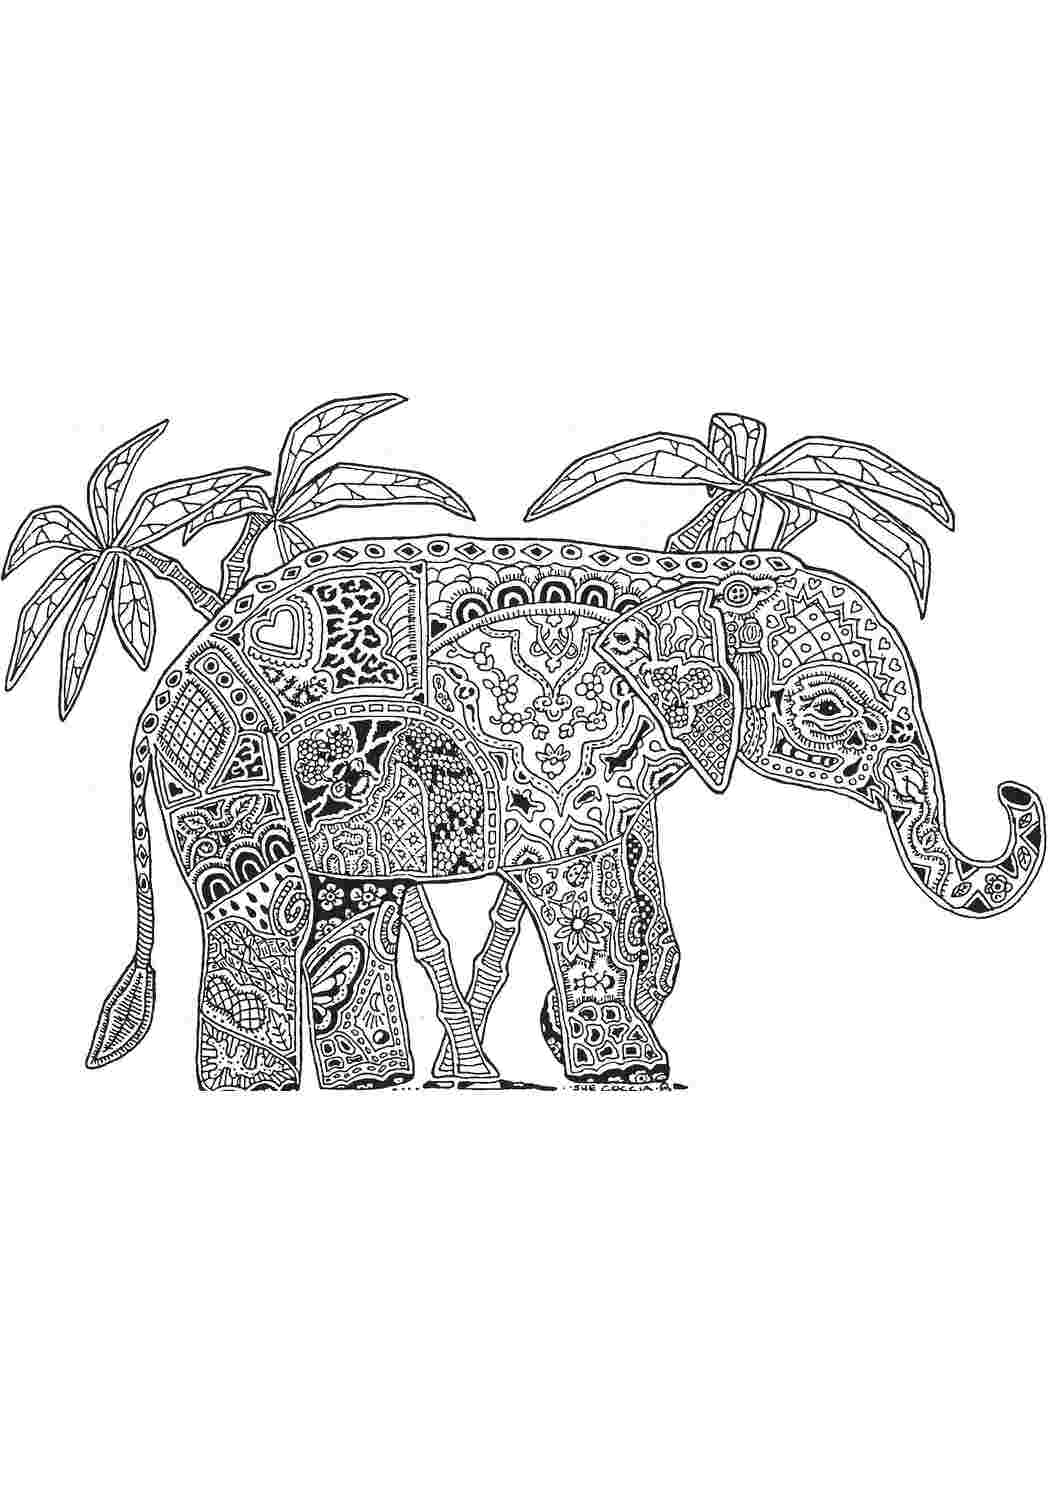 Раскраски Узорный слон среди пальм раскраски антистресс Антистресс